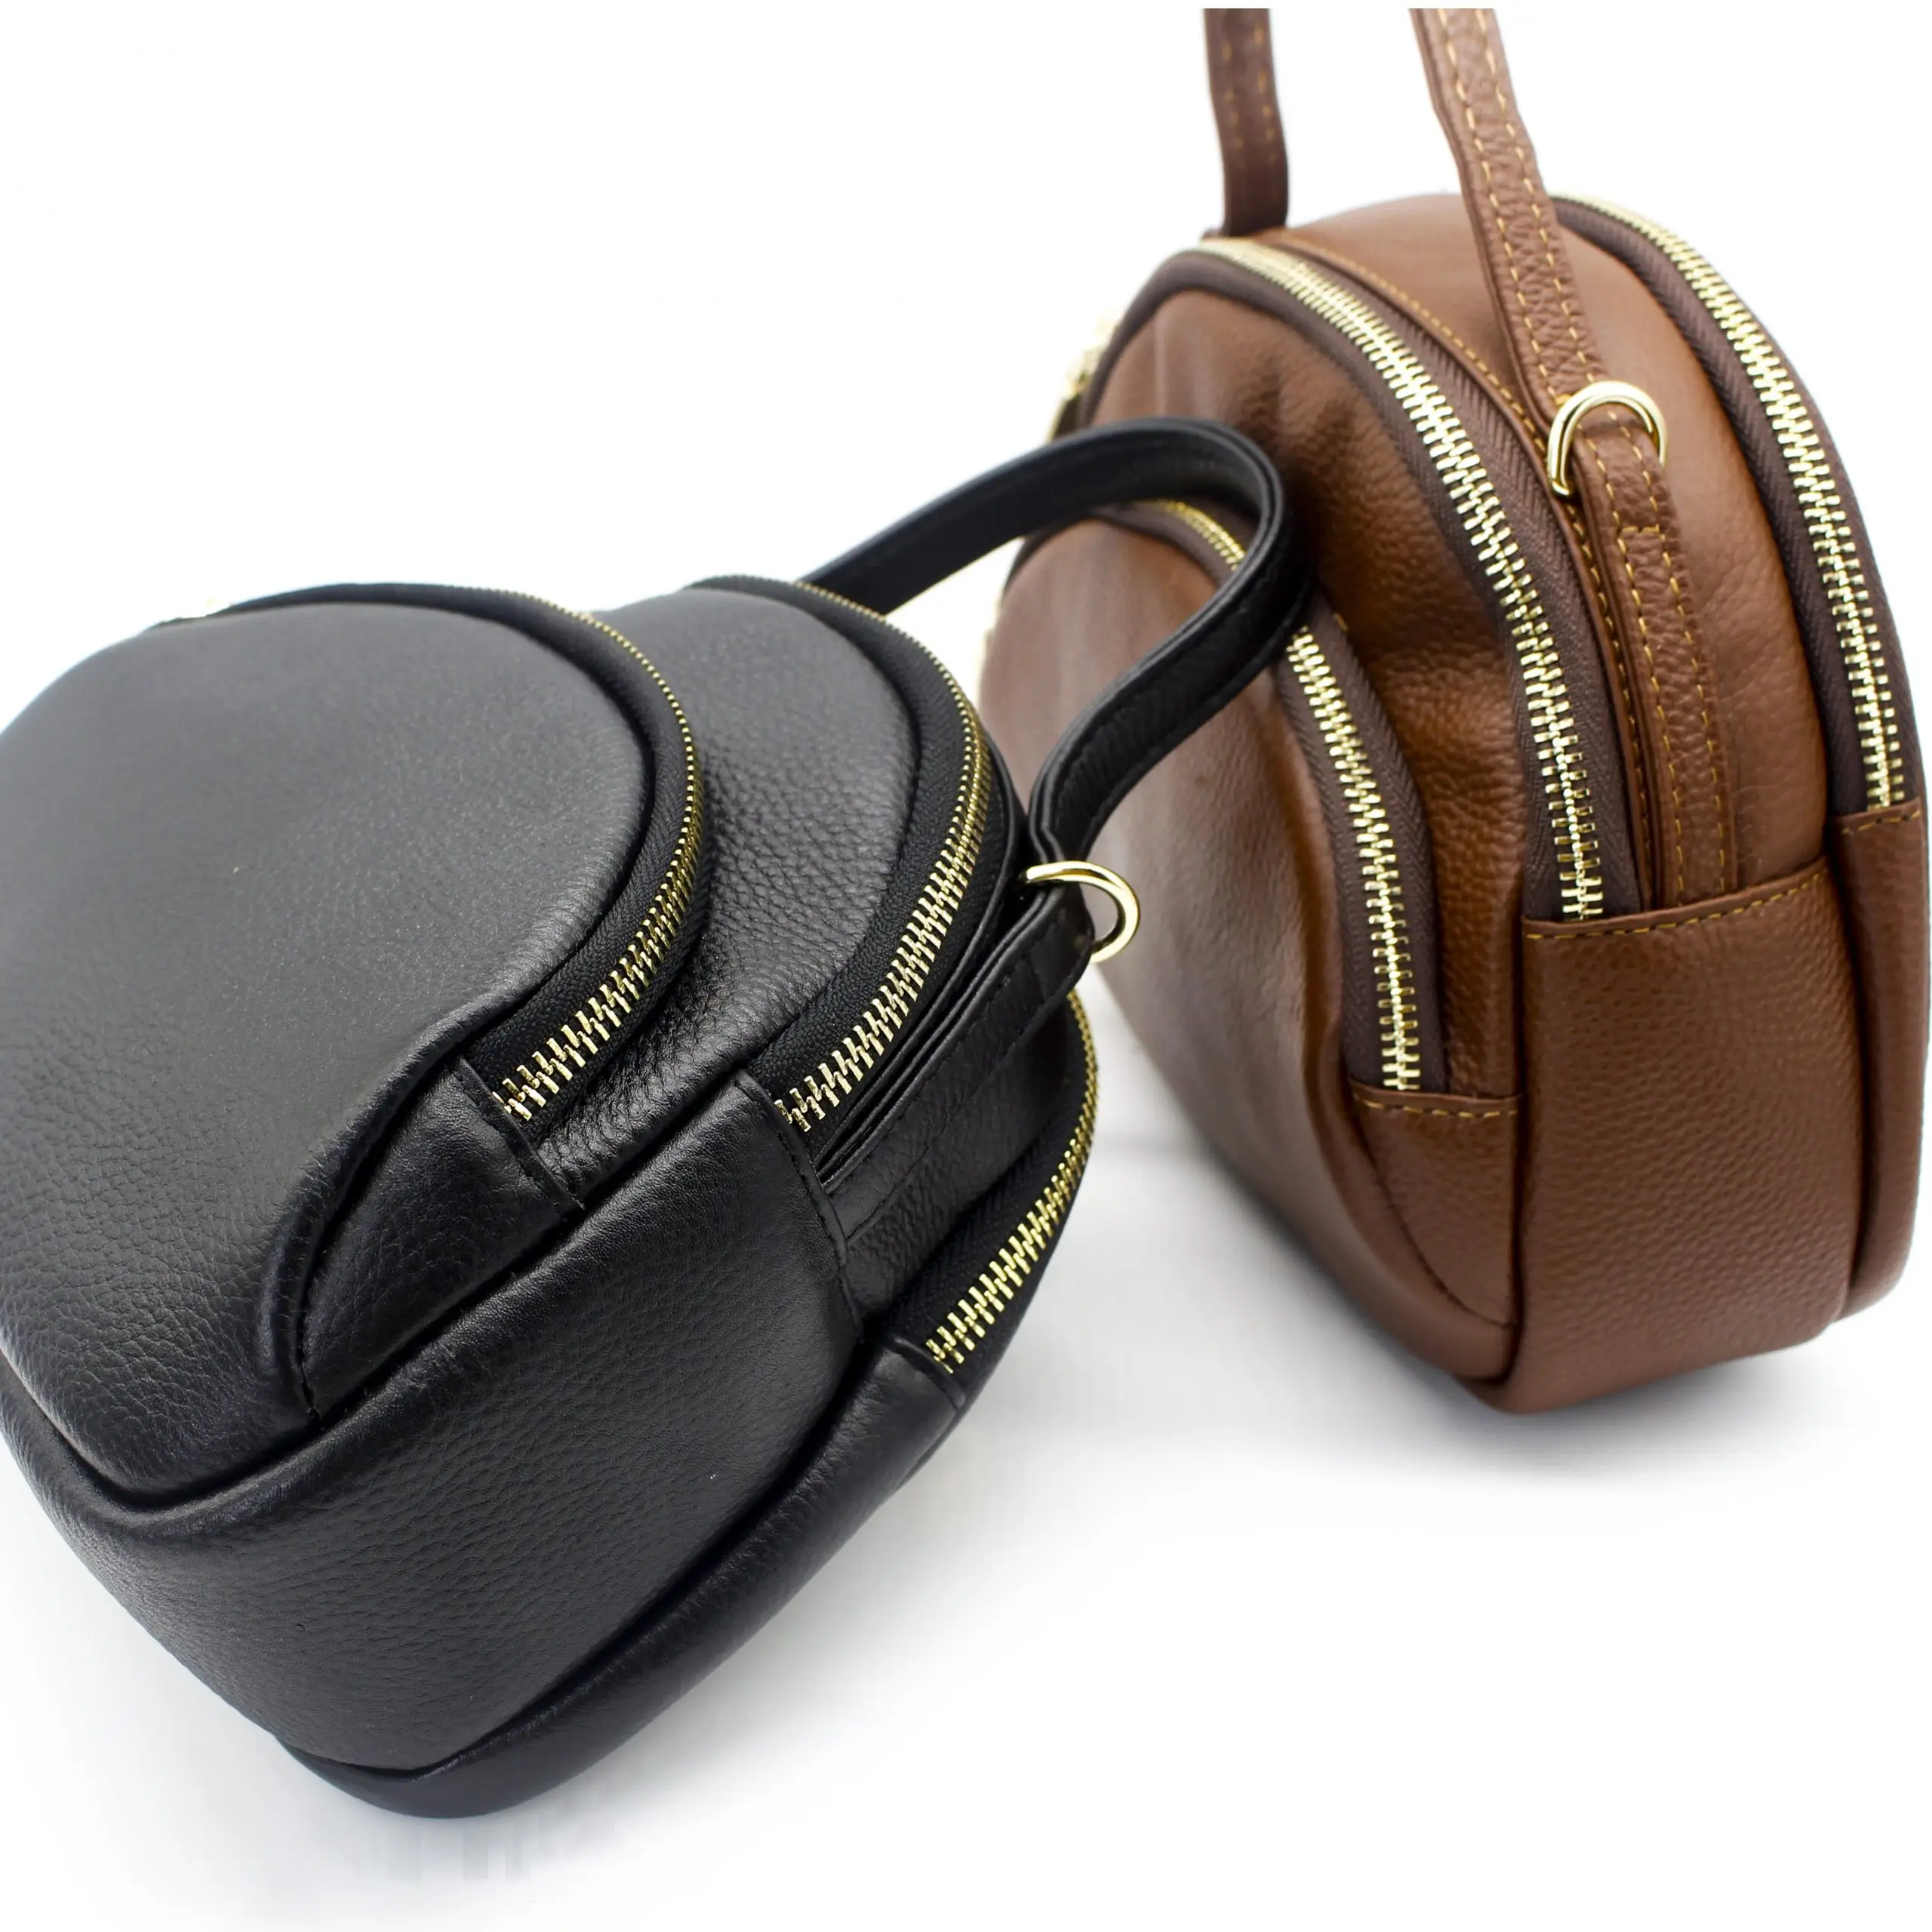 Túi nữ thời trang sang trọng túi đầy đủ hạt chính hãng da bò Túi xách sử dụng để lưu trữ tiền, điện thoại, chìa khóa, thẻ, trang điểm